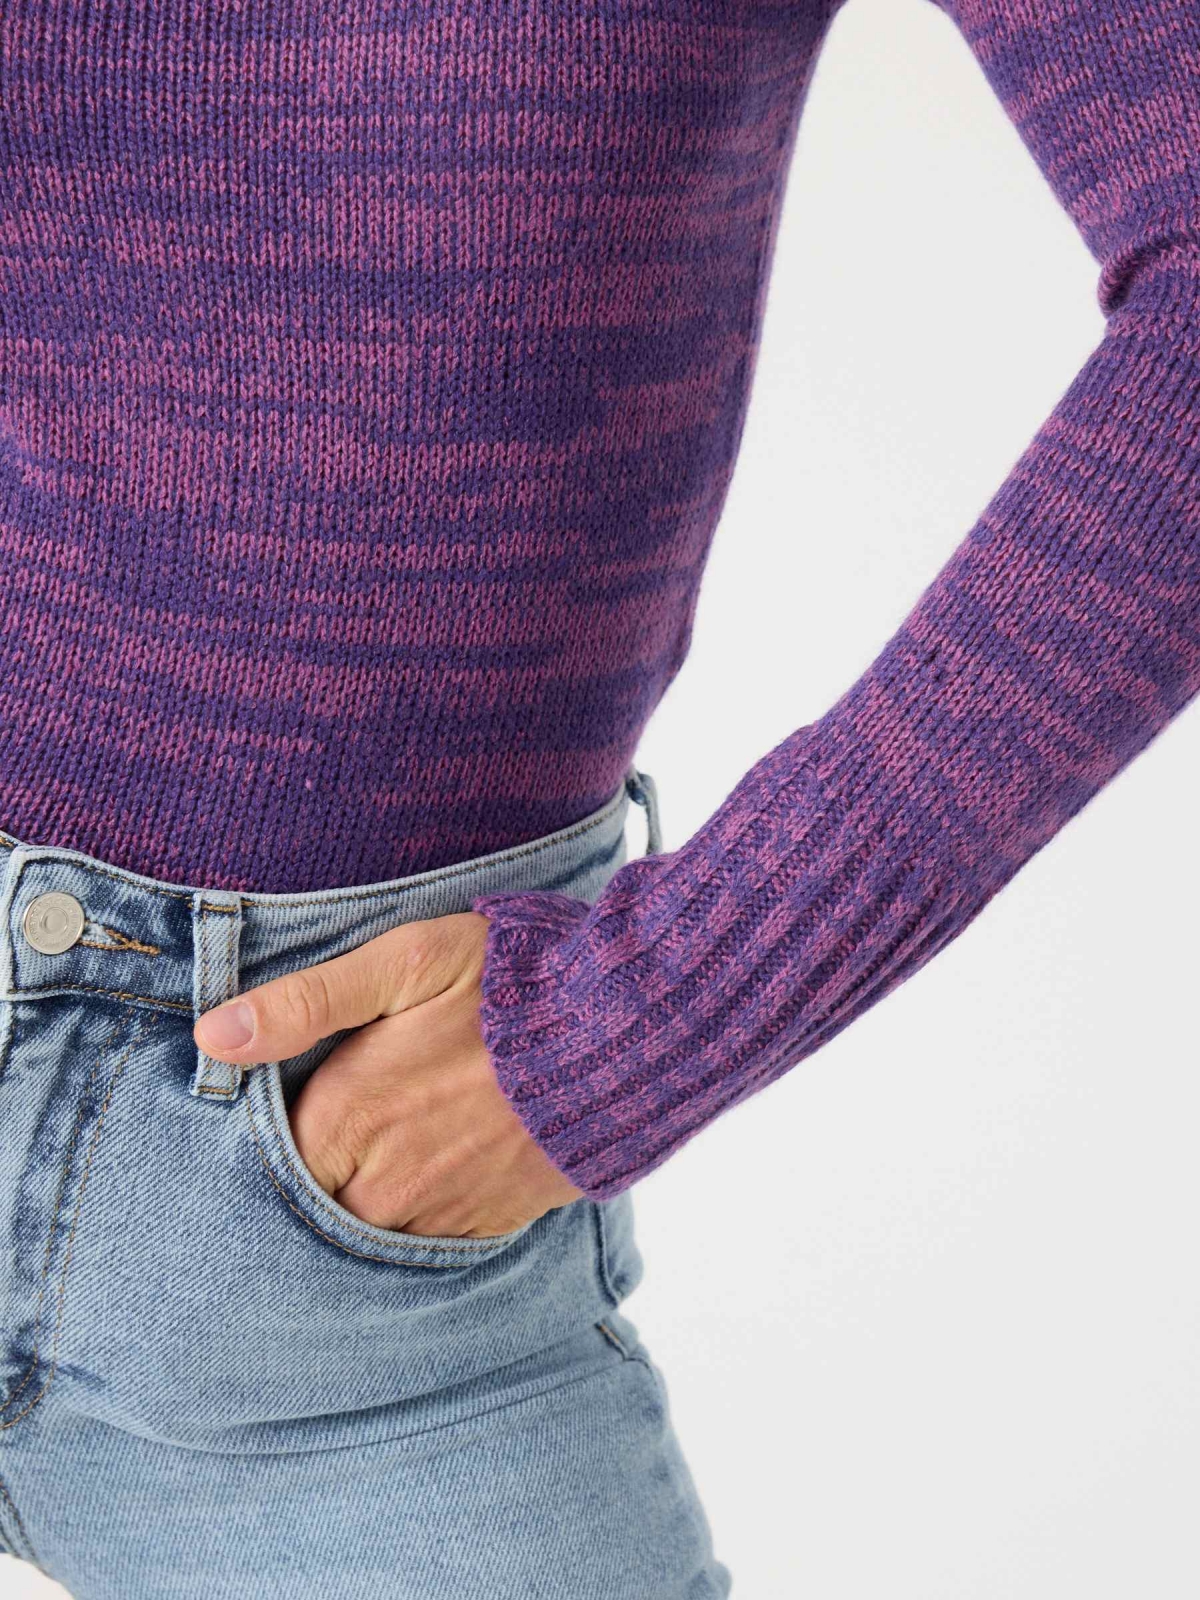 Fleece turtleneck sweater purple detail view